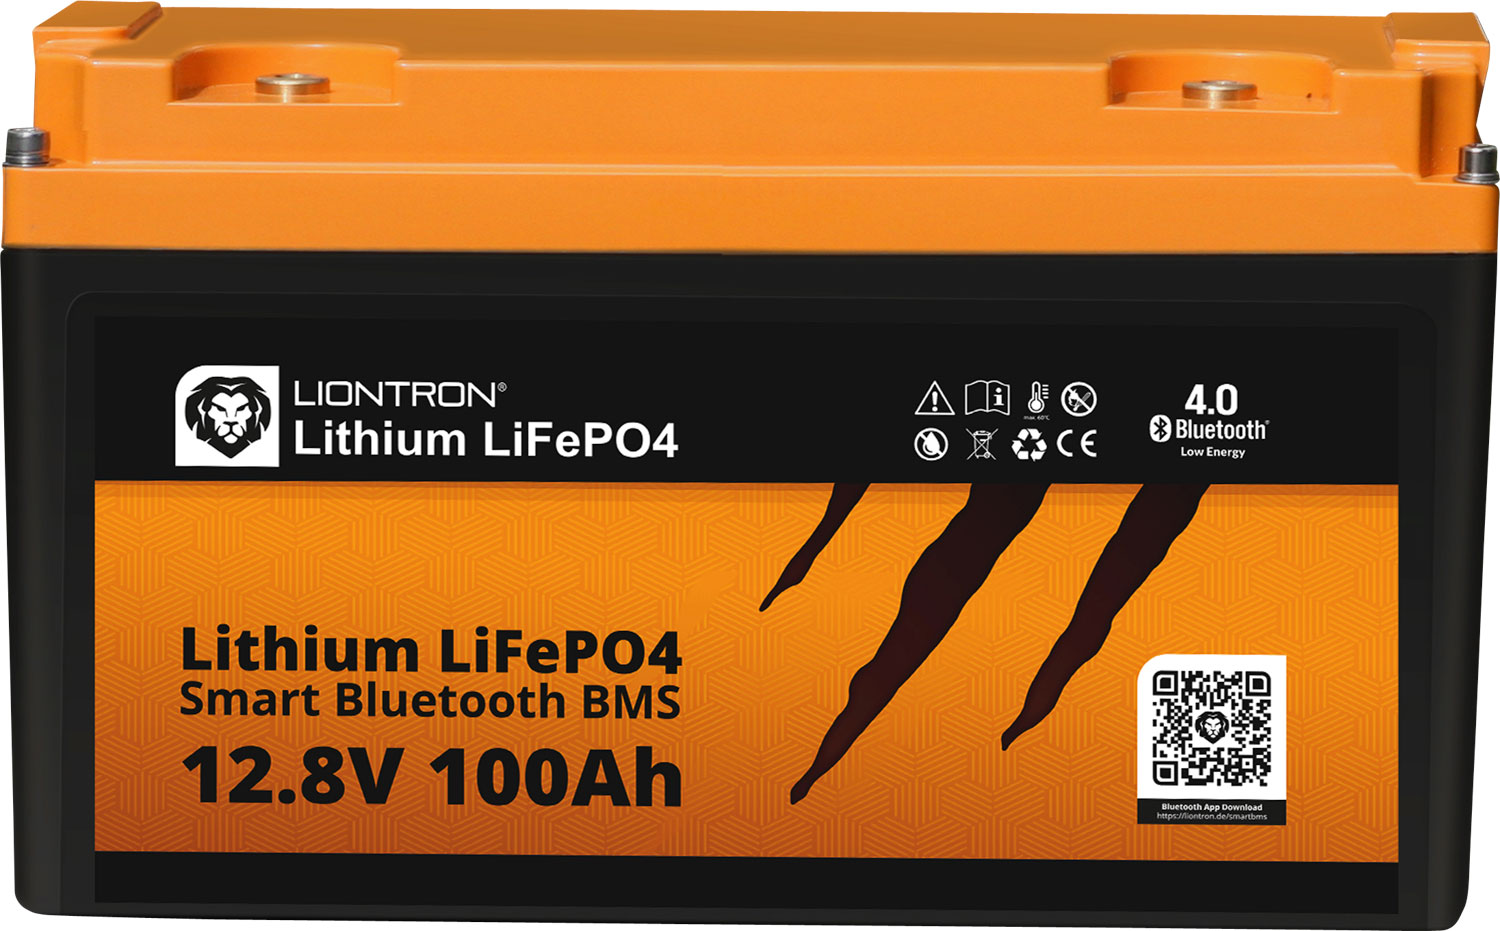 Liontron LiFeP04 Smart Bluetooth BMS Lithium Batterie 12,8 V